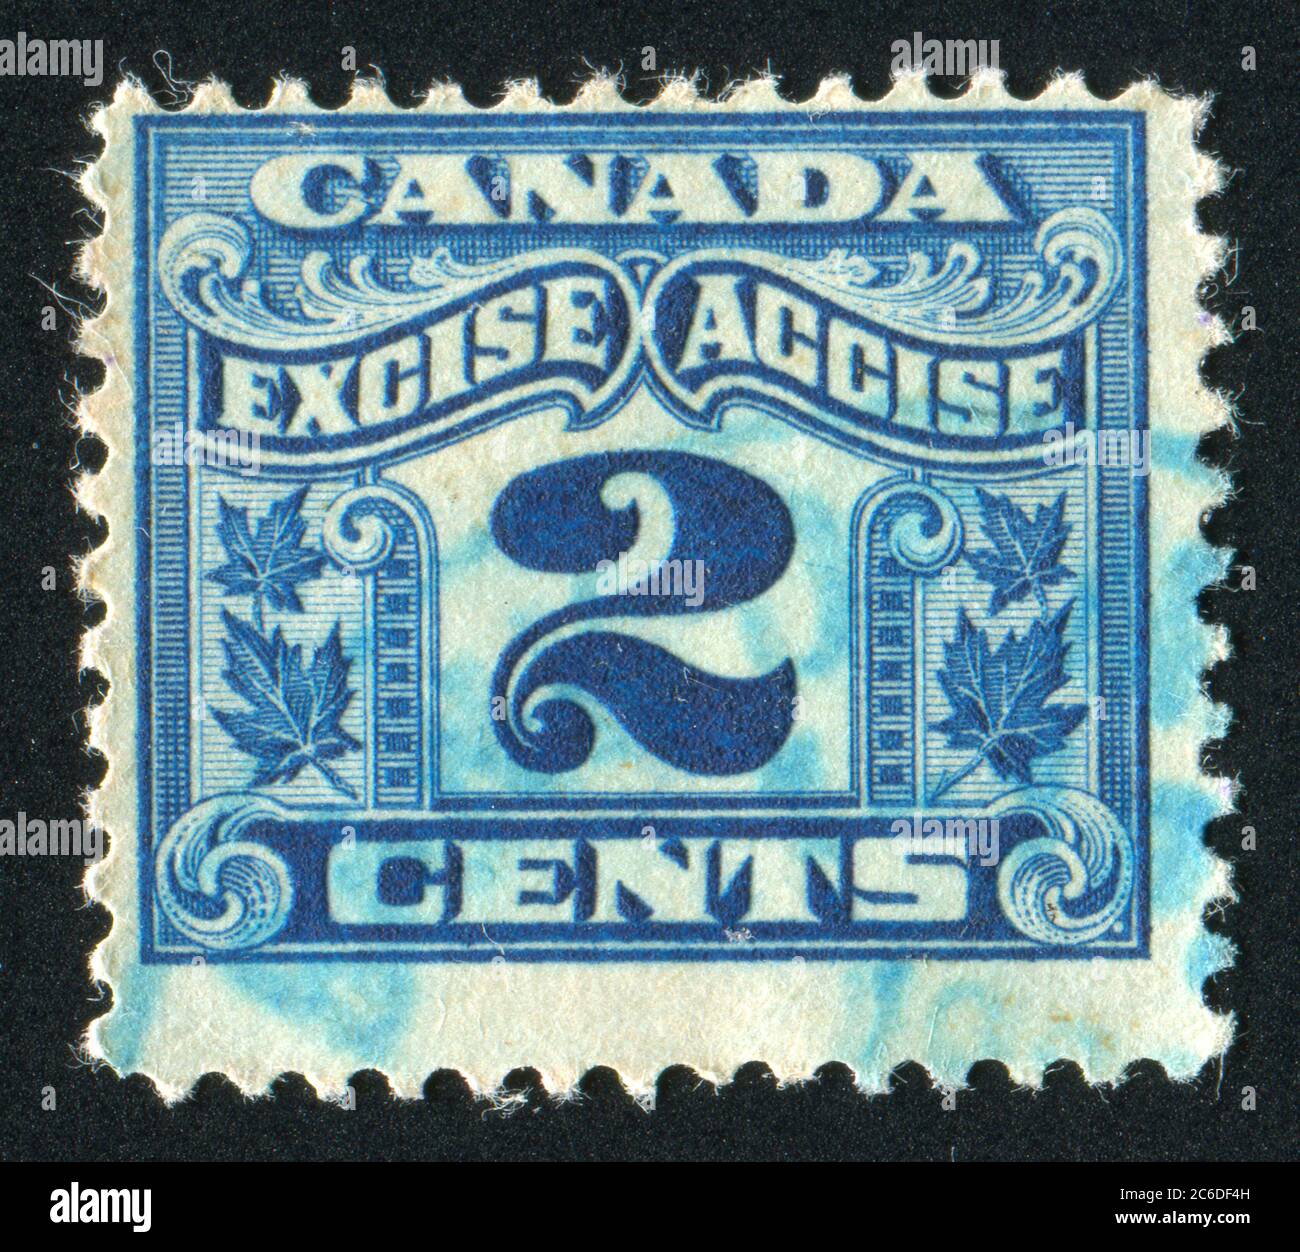 CANADA - VERS 1954 : timbre imprimé par le Canada, indique accise, deux cents, vers 1954 Banque D'Images